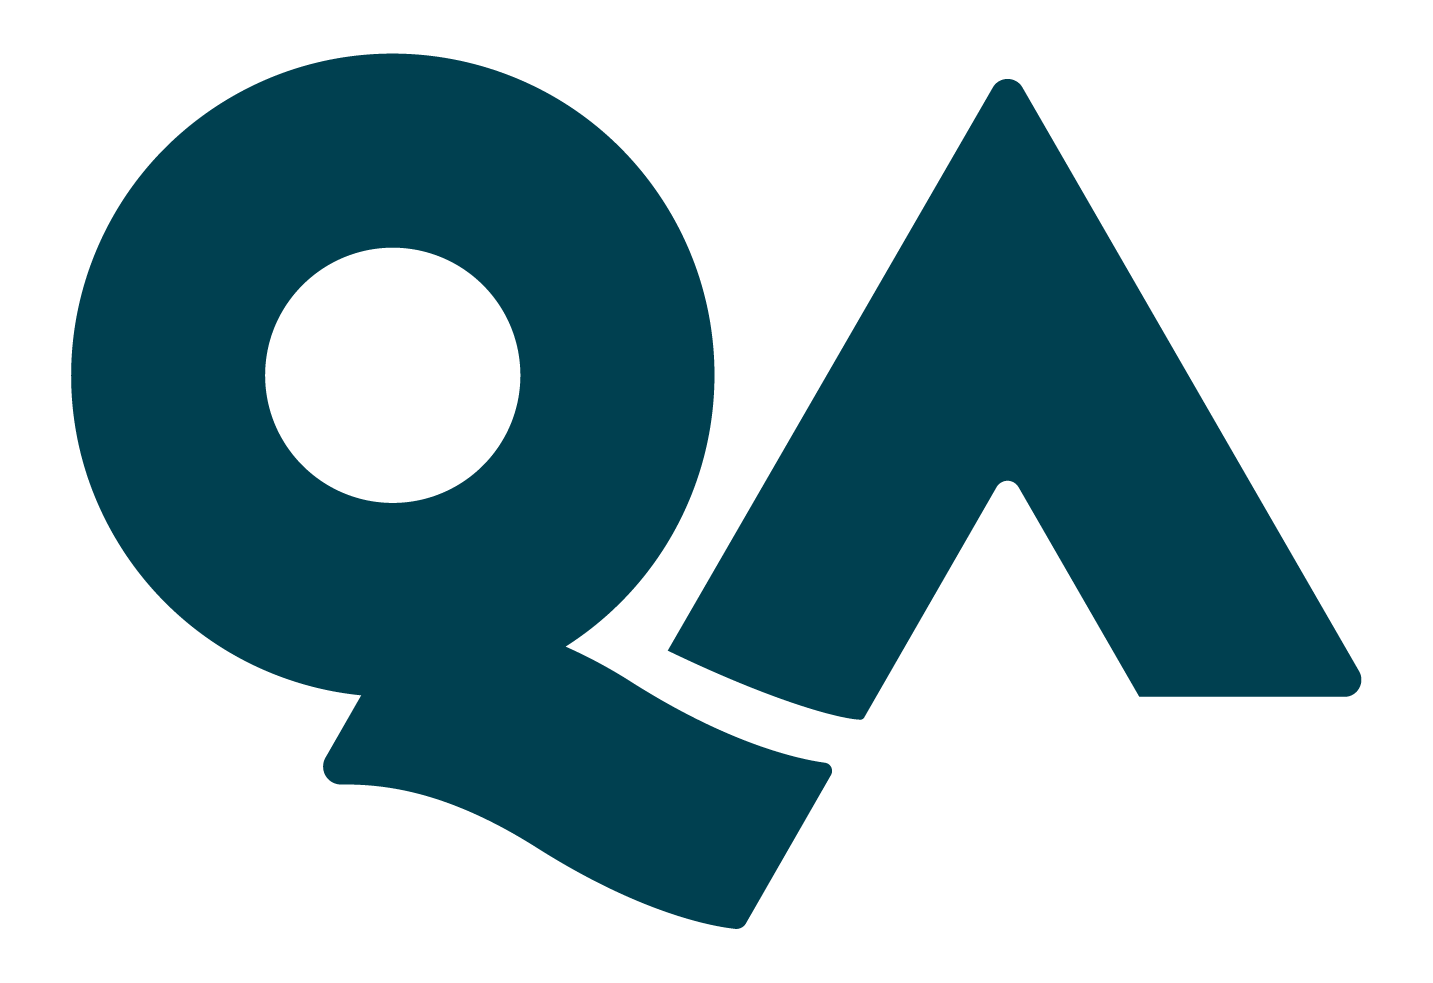 qa-logo-freelogovectors.net_